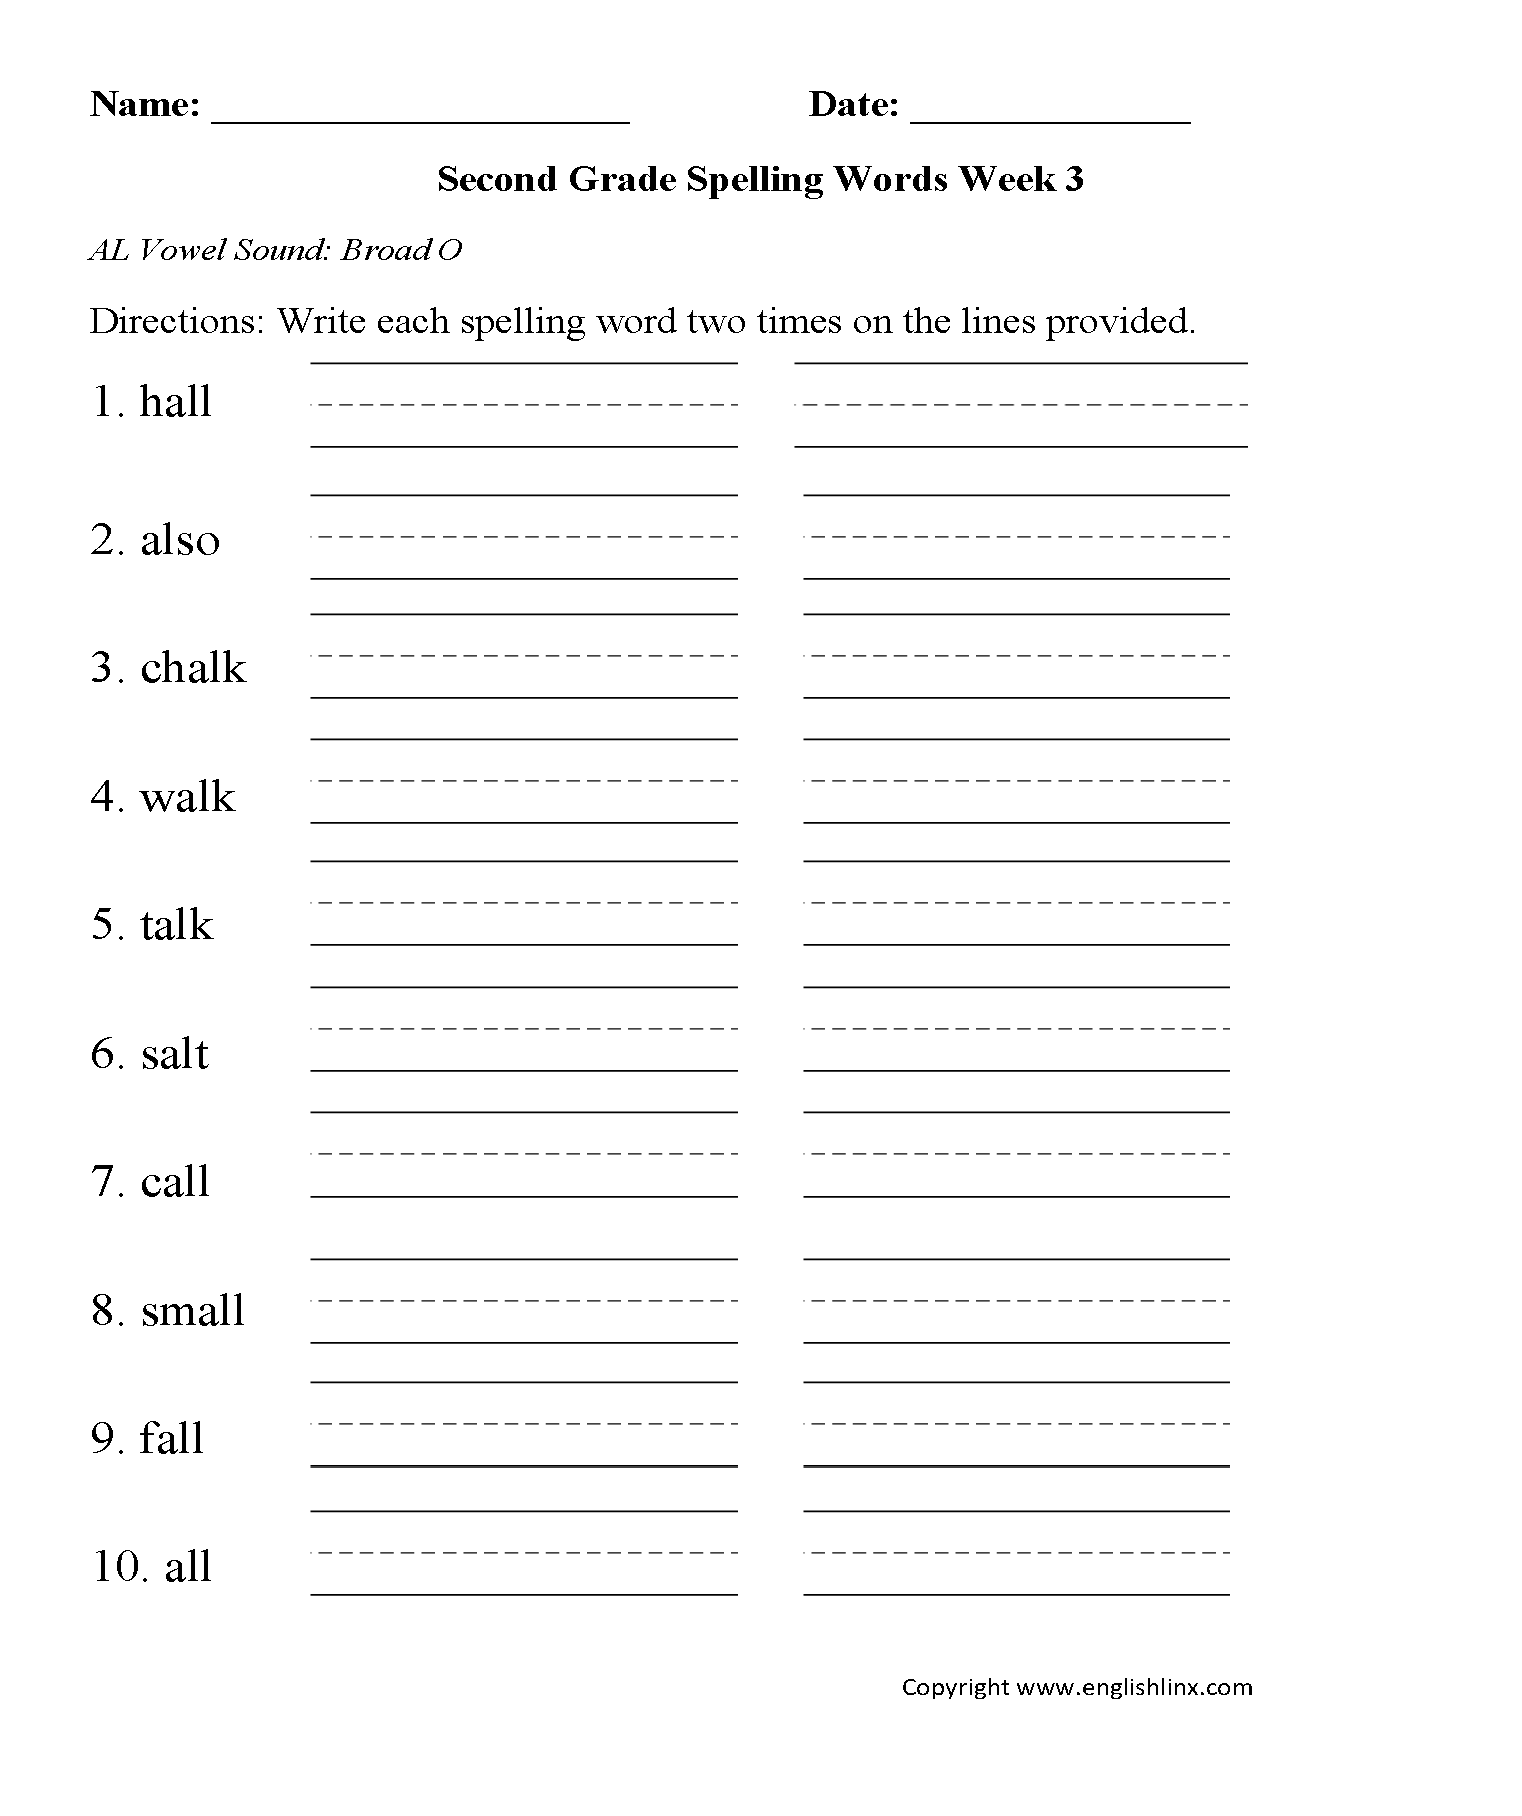 Spelling Worksheets For Grade 2